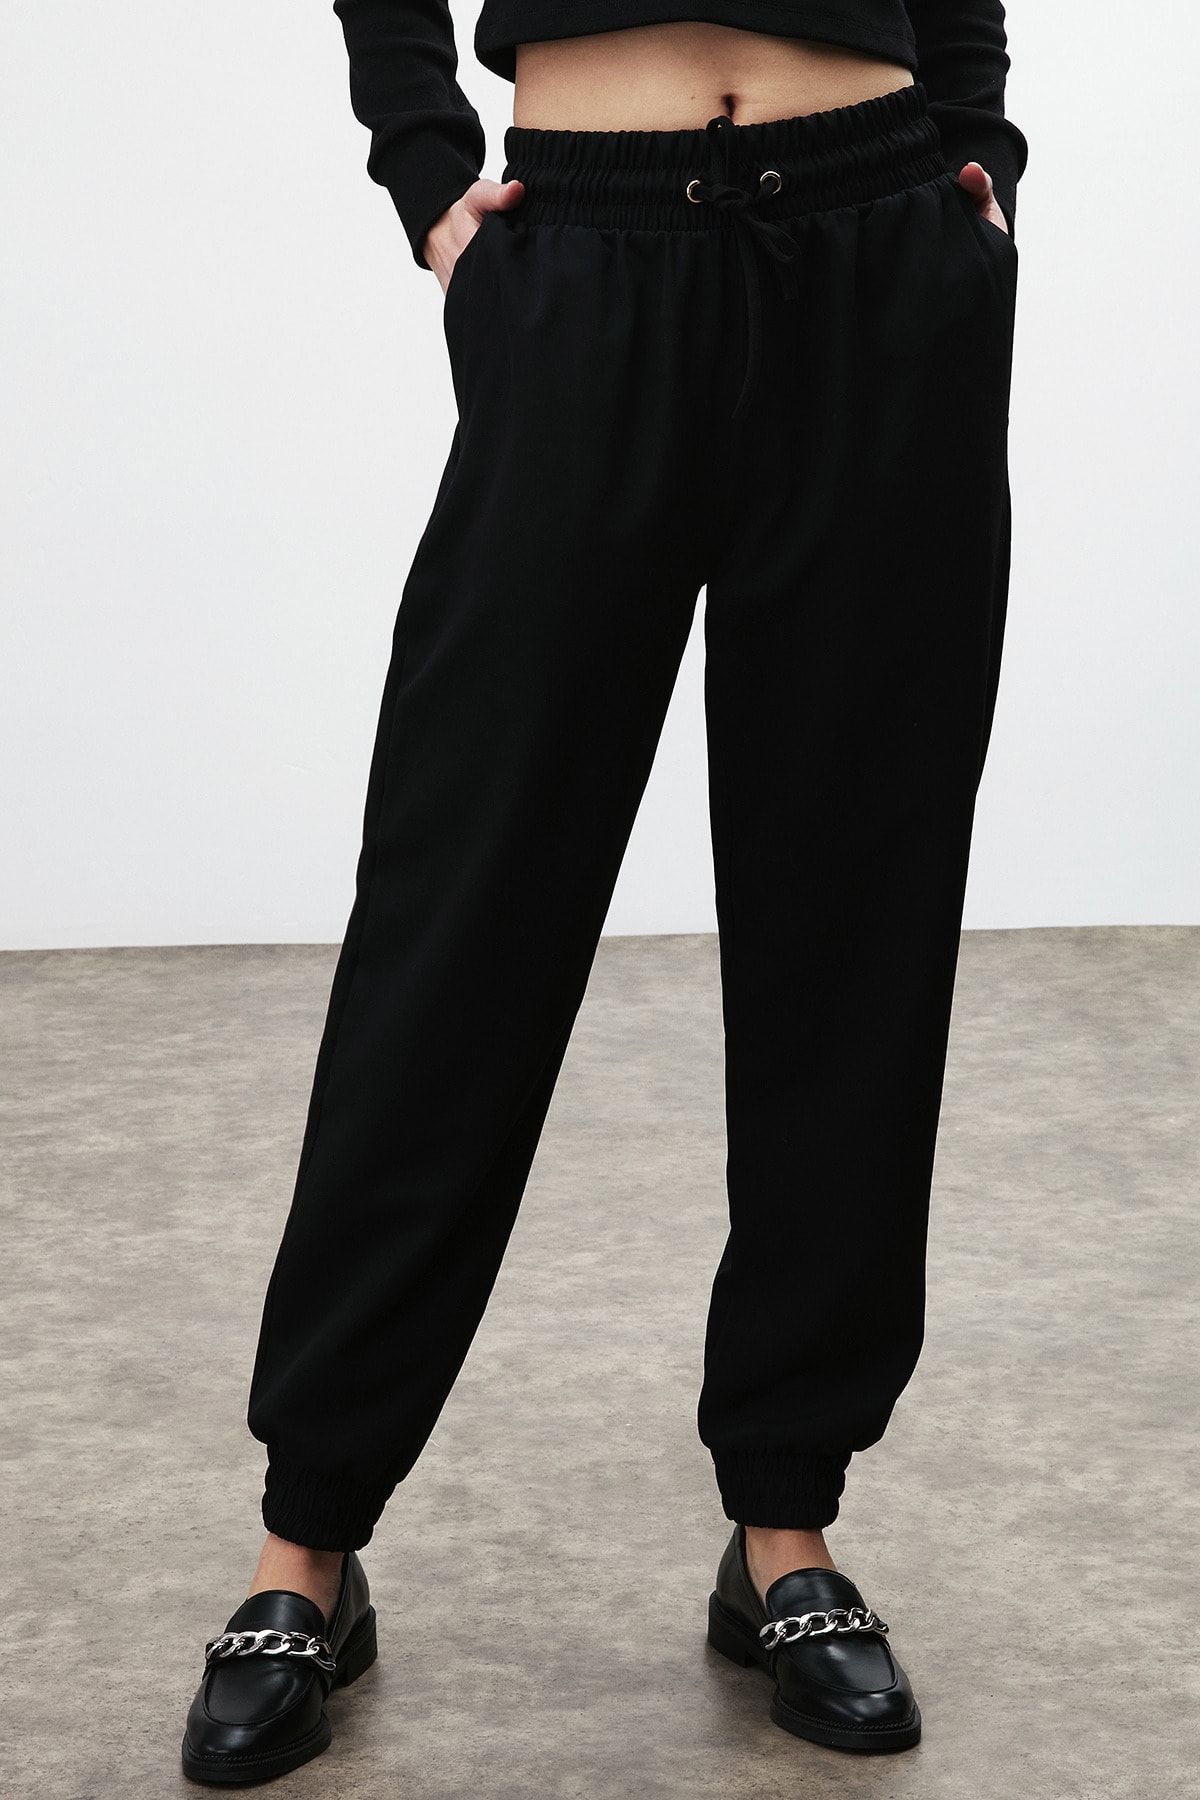 GRIMELANGE Angelıca Kadın Siyah Düz Renk Comfort Pantolon